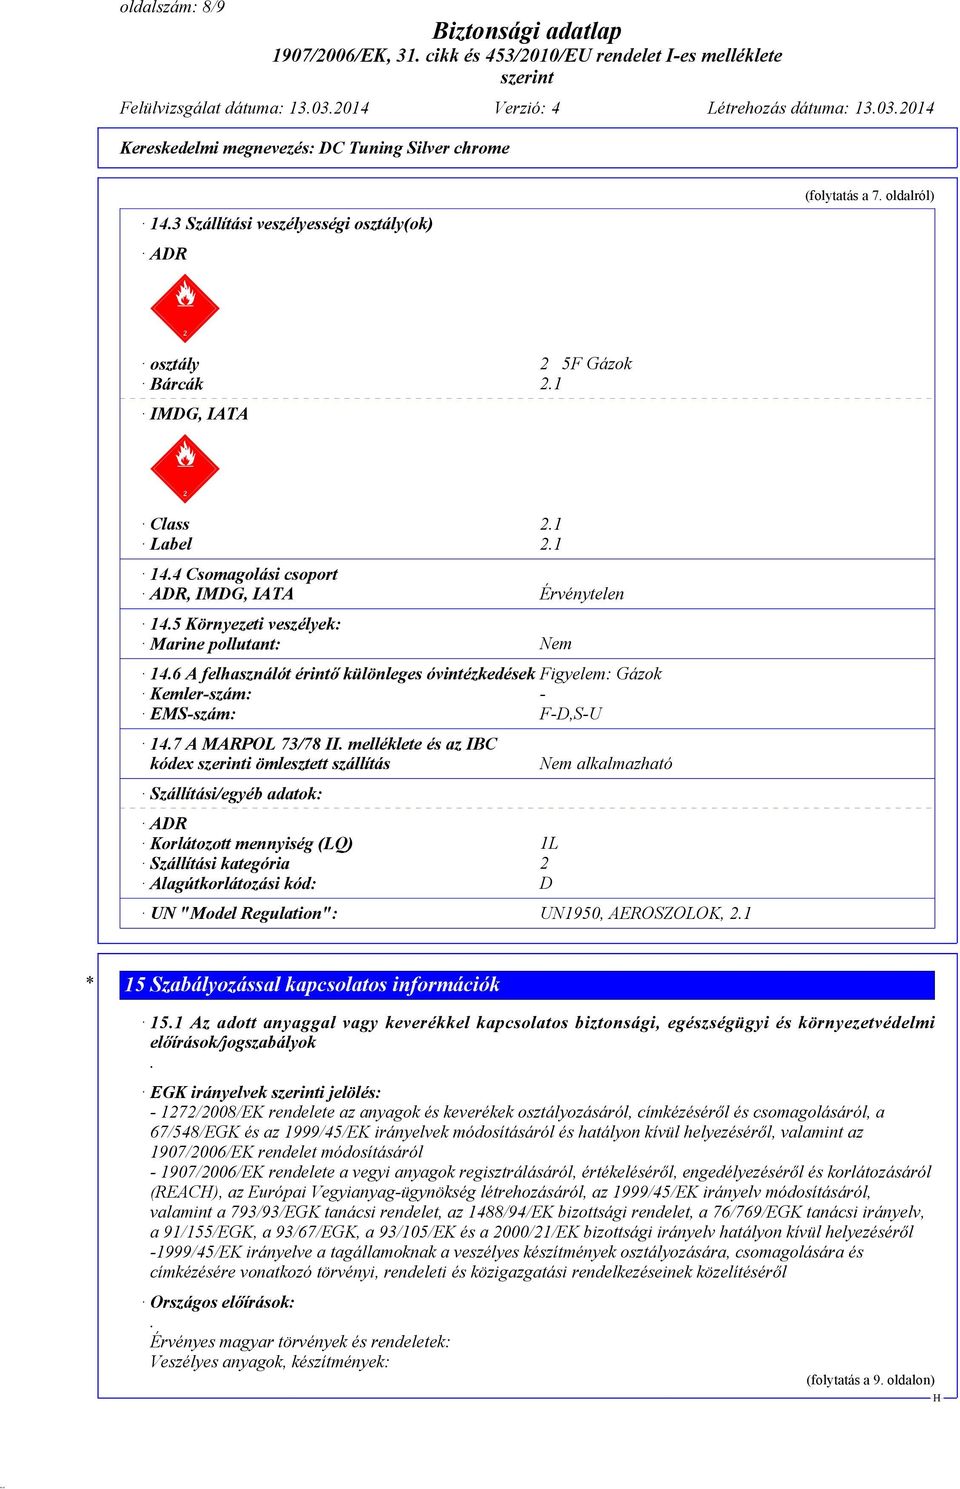 6 A felhasználót érintő különleges óvintézkedések Figyelem: Gázok Kemler-szám: - EMS-szám: F-D,S-U 14.7 A MARPOL 73/78 II.